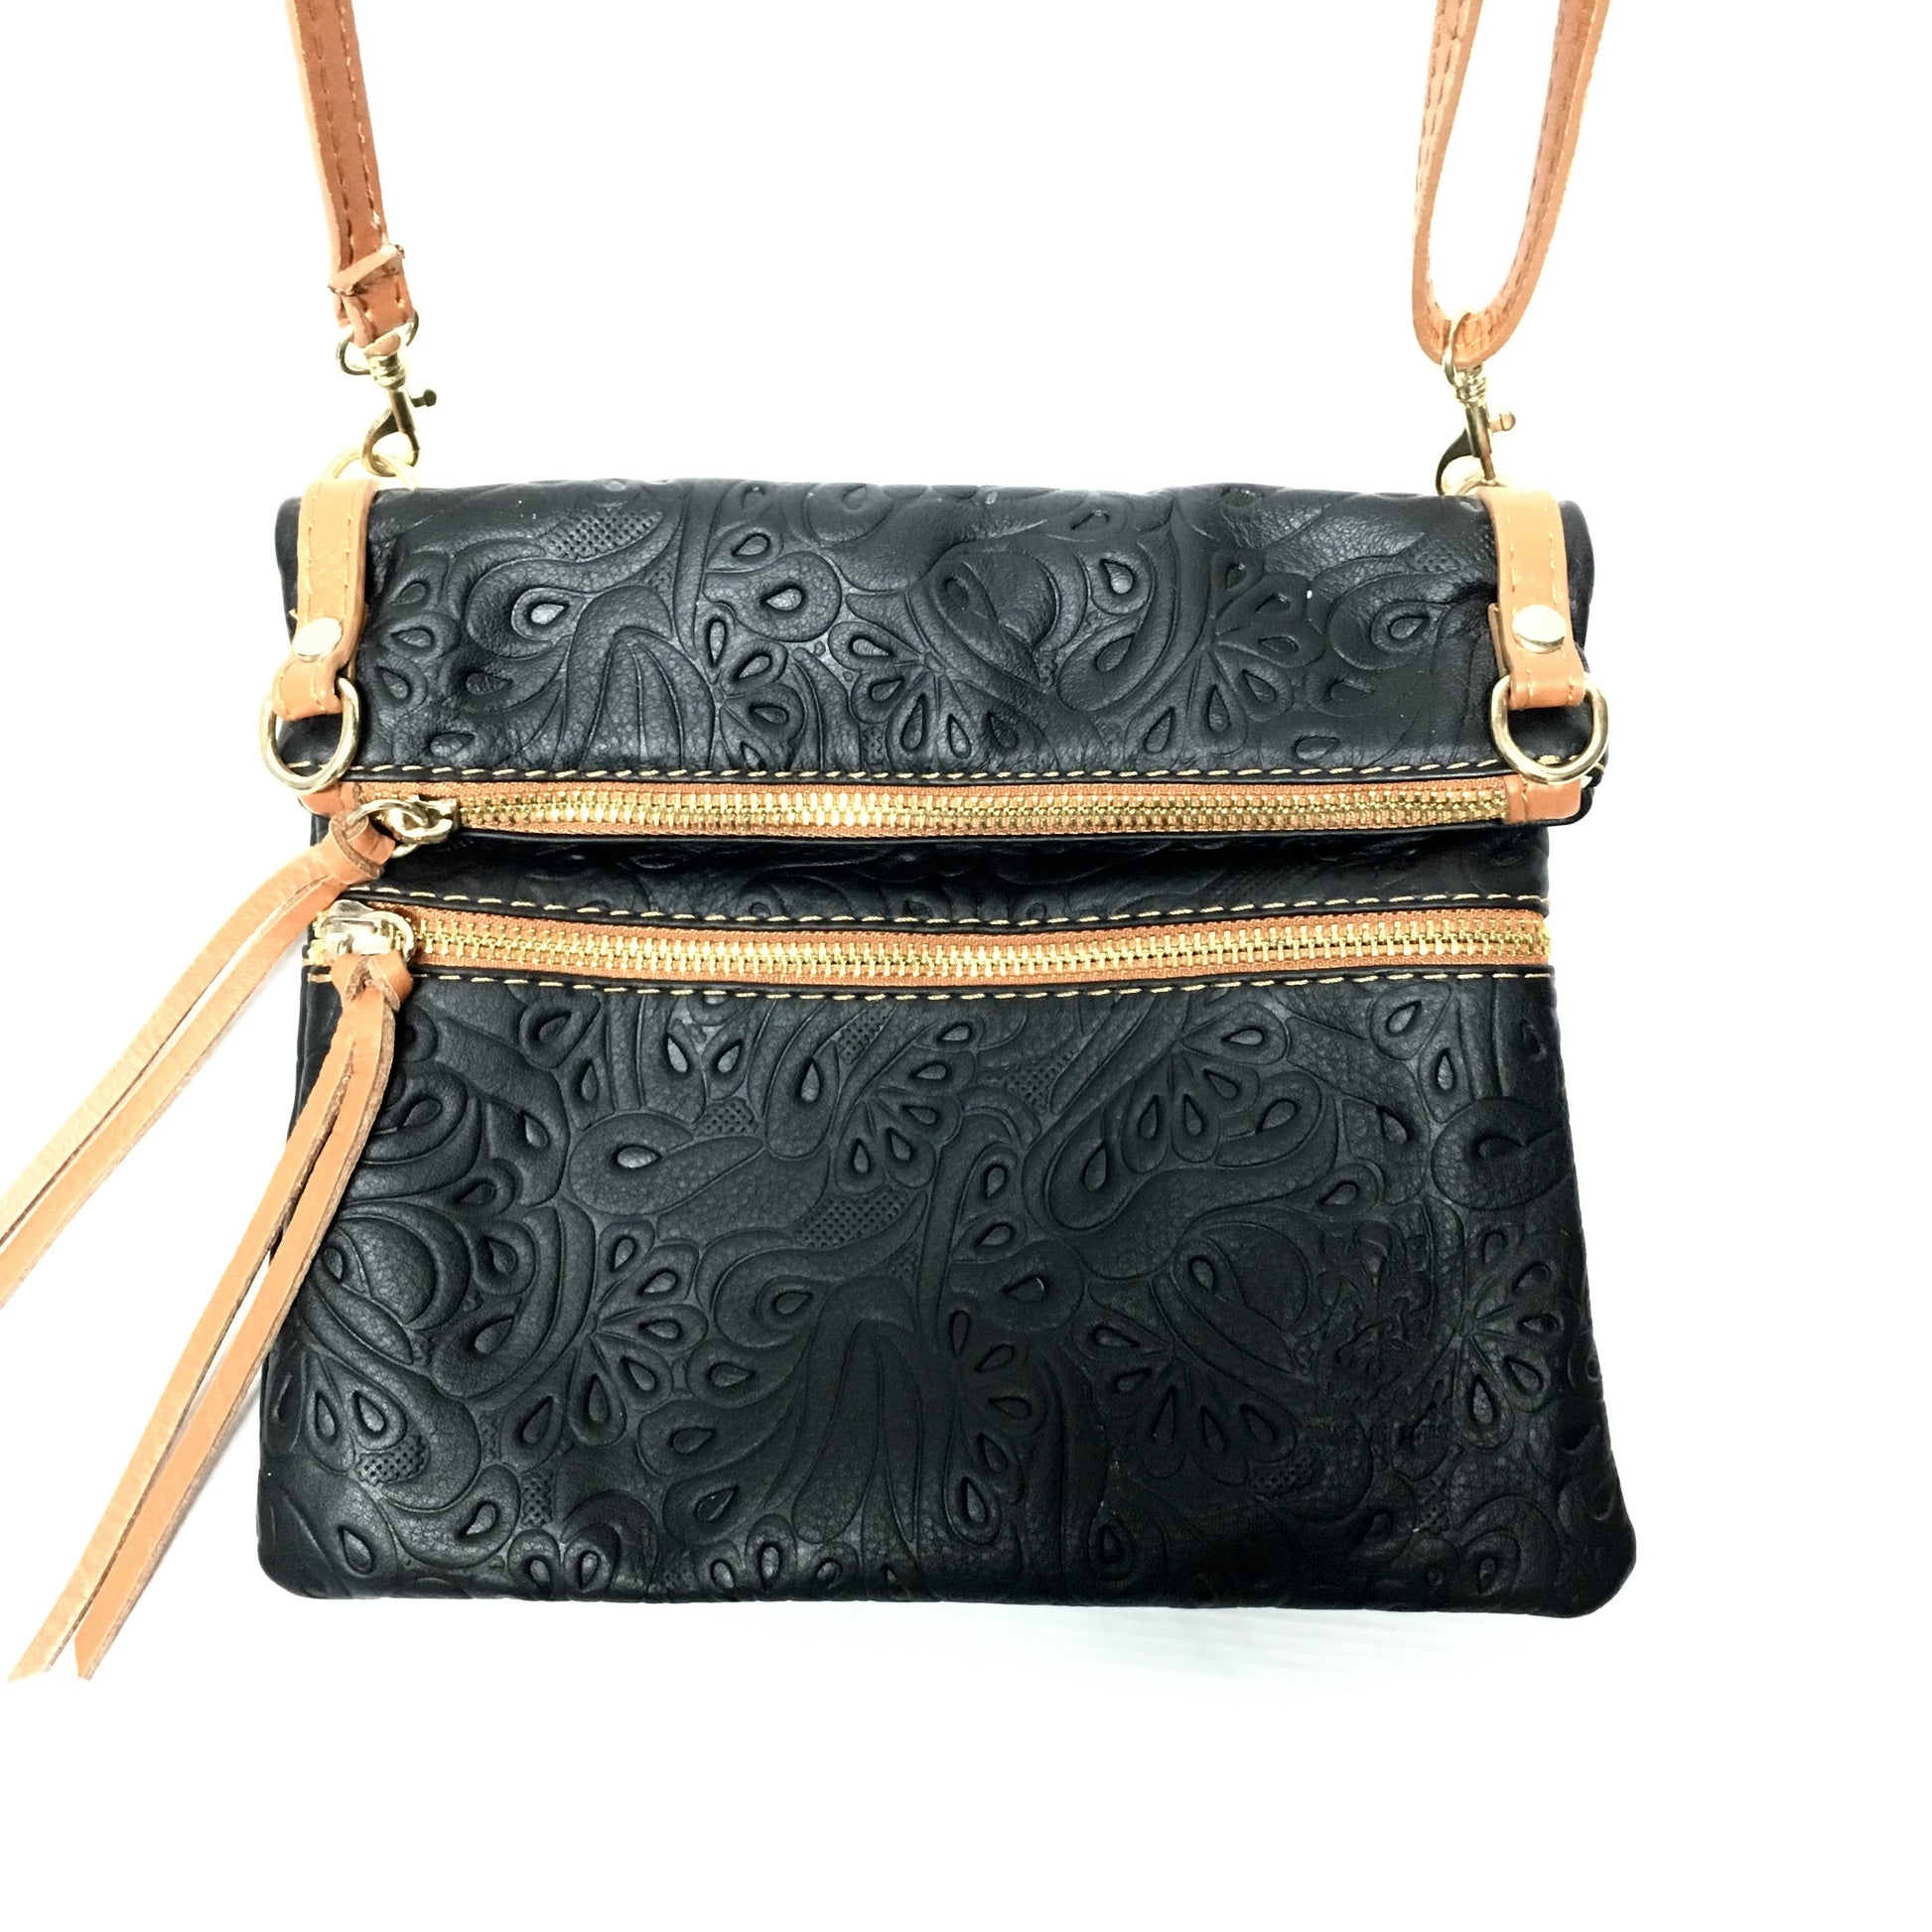 black and tan leather purse, italian leather purse